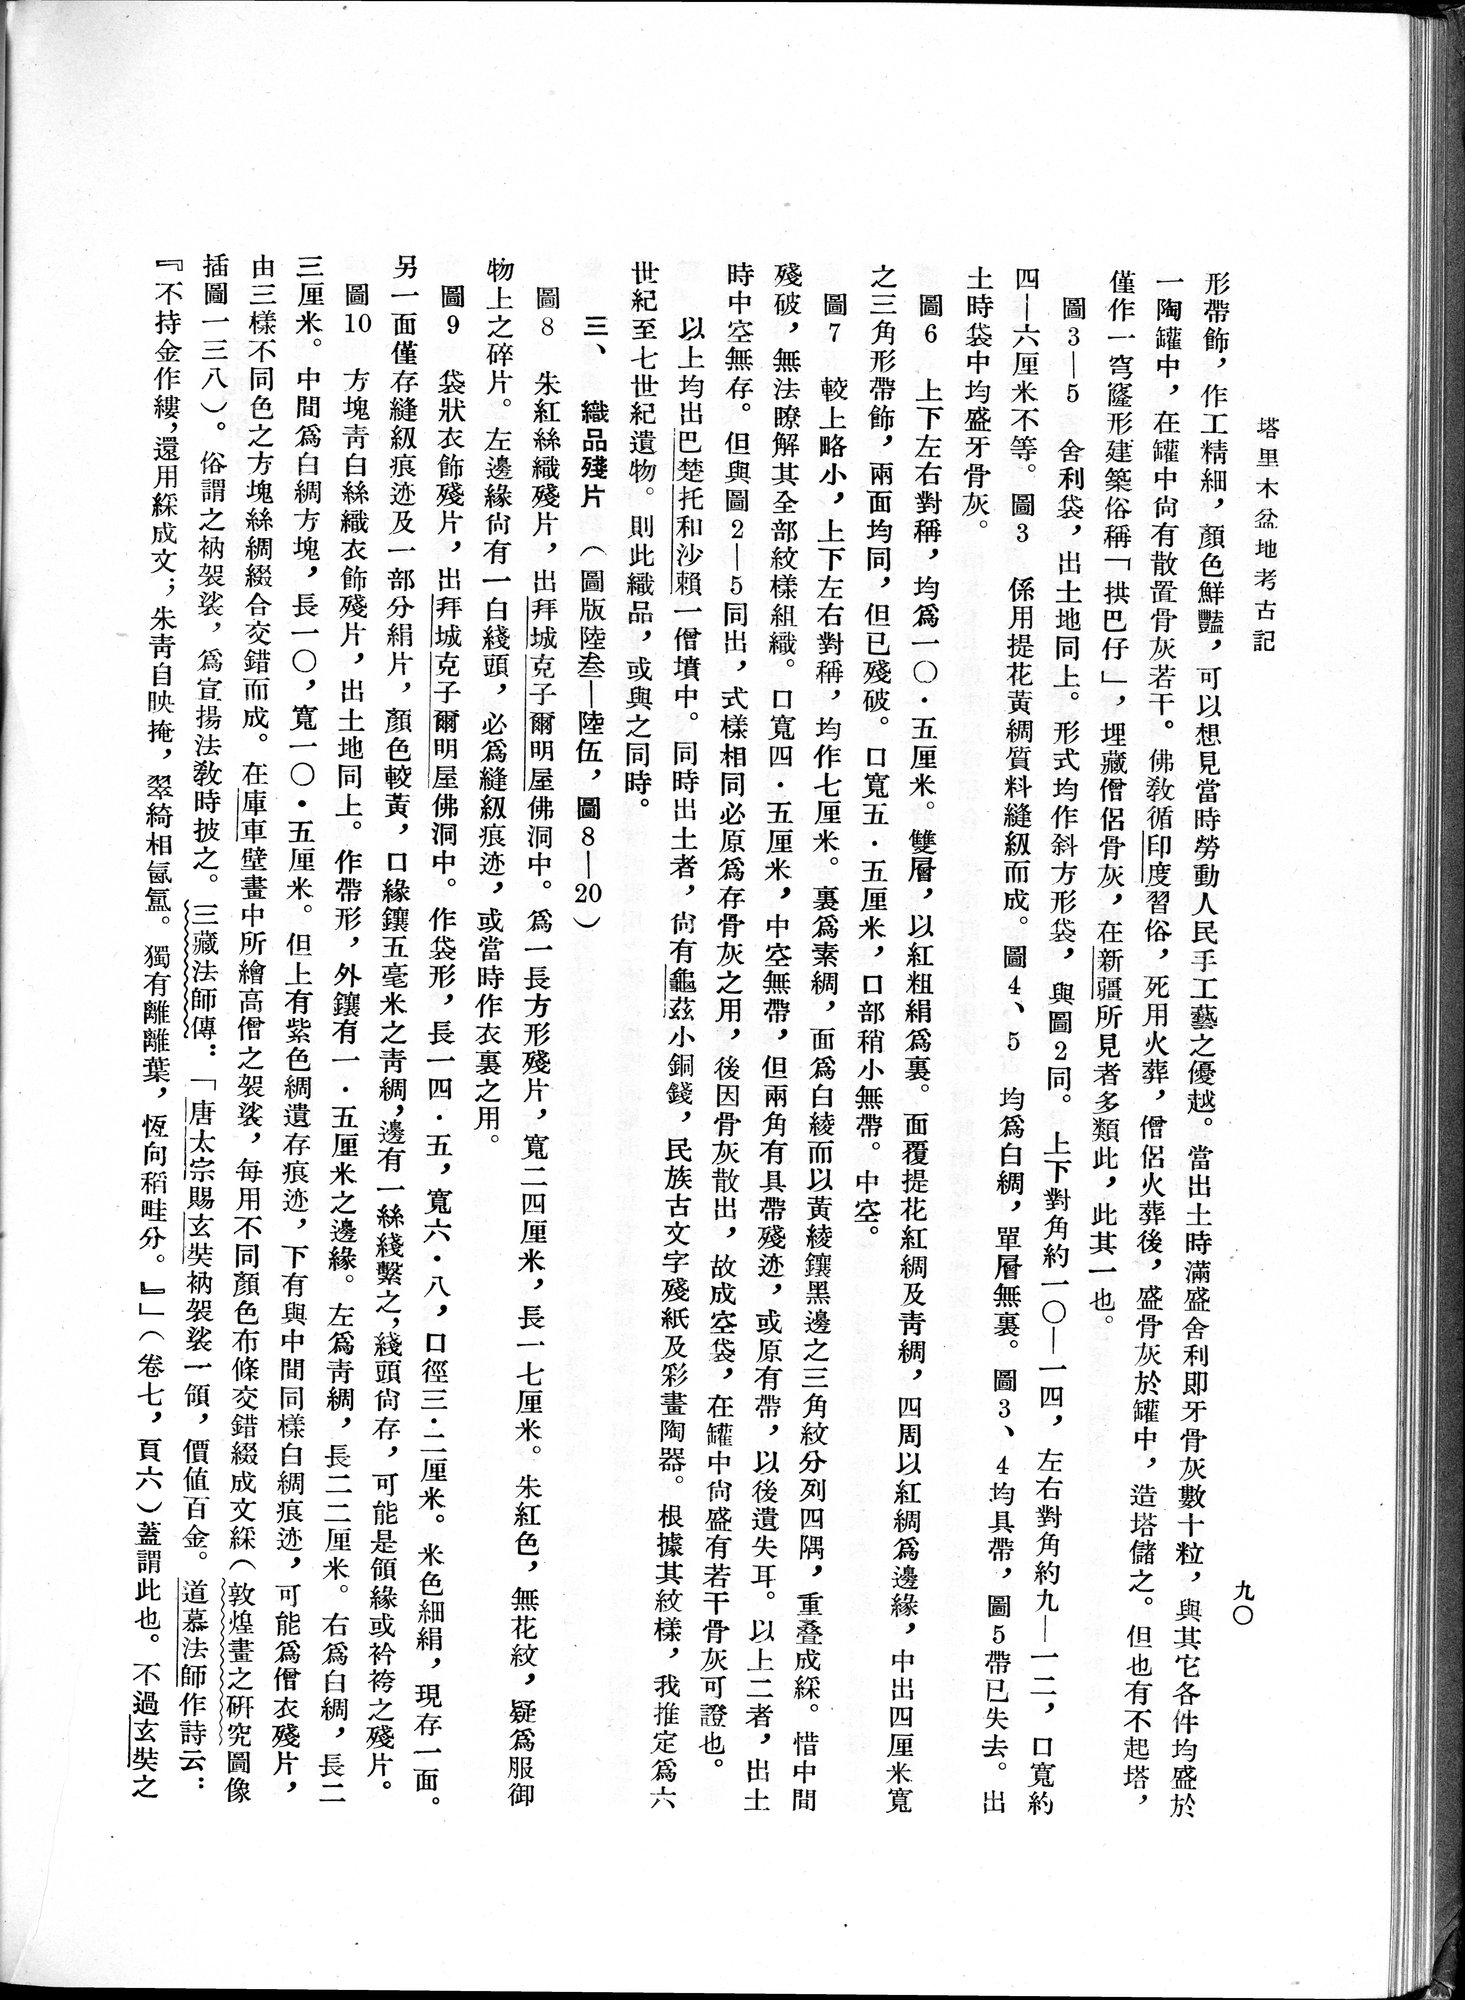 塔里木盆地考古記 : vol.1 / Page 154 (Grayscale High Resolution Image)